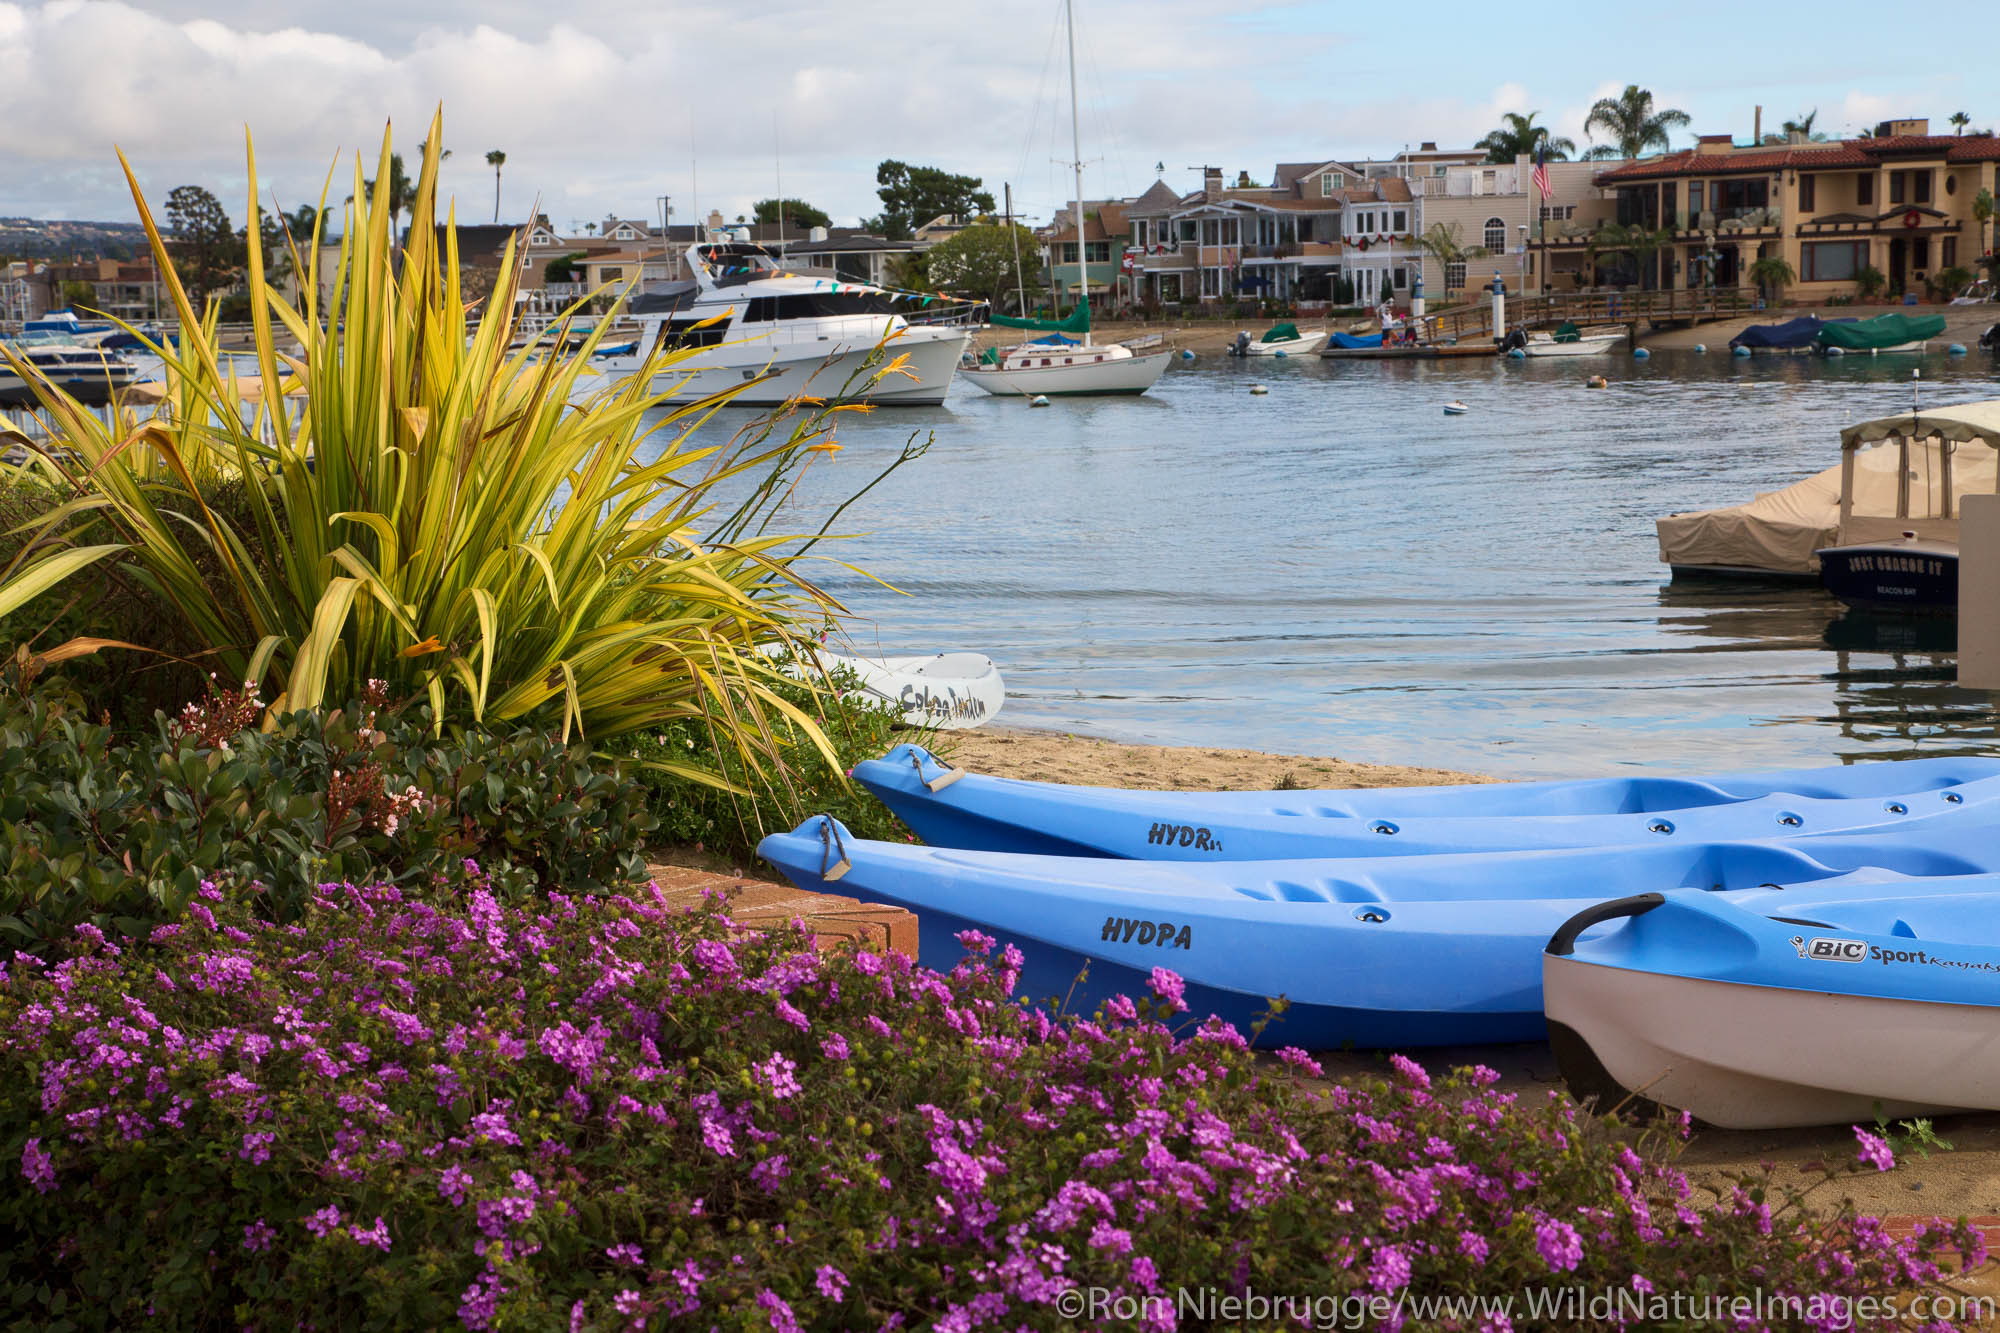 Balboa Island, Newport Beach, Orange County, California.